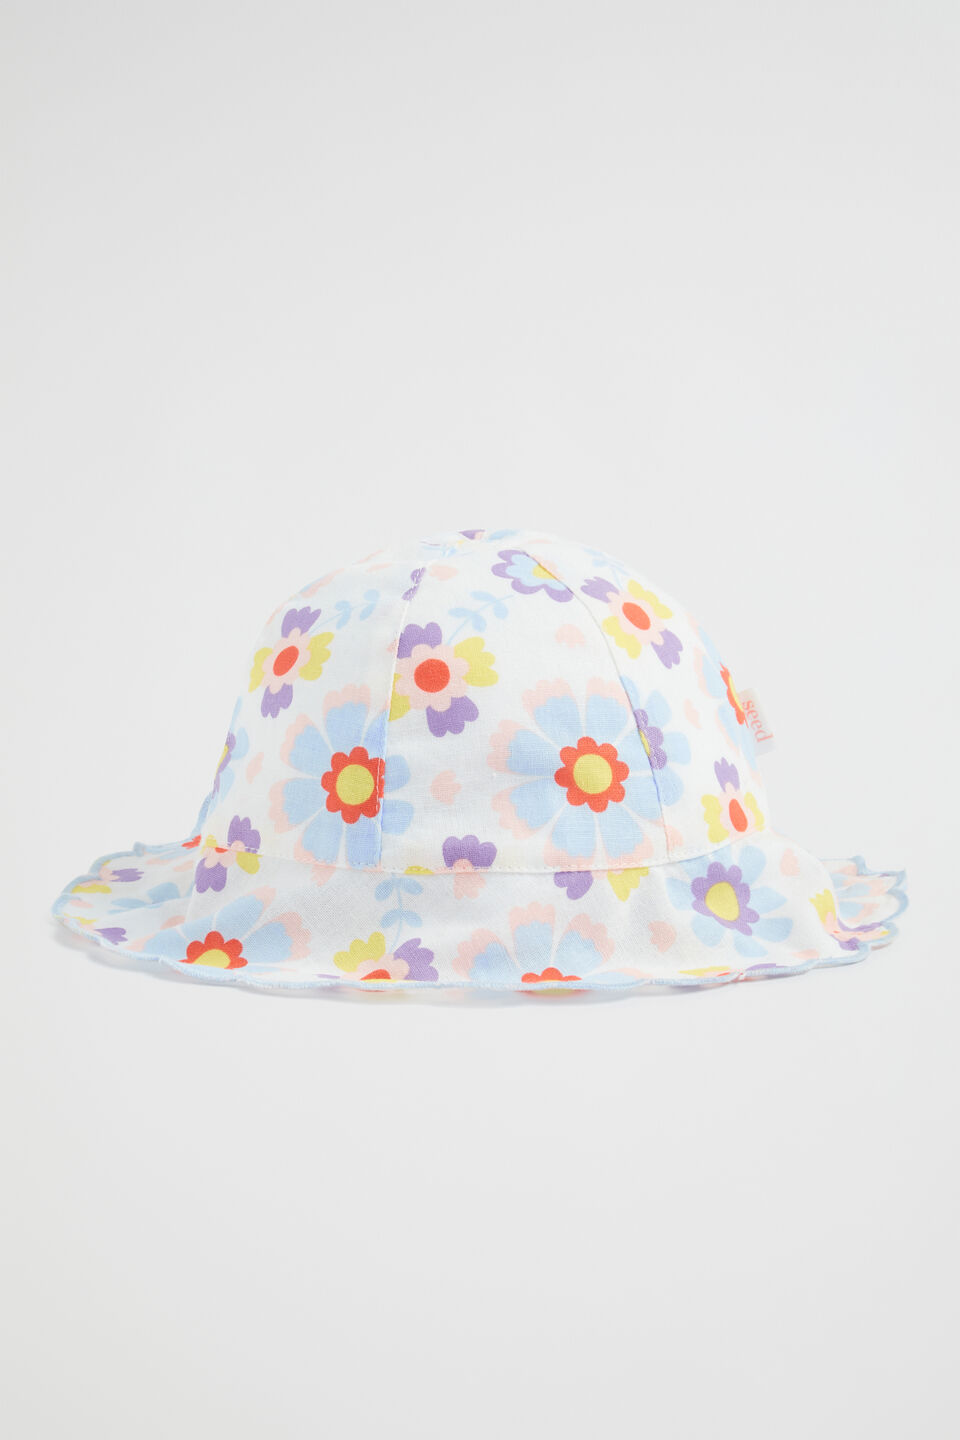 Scalloped Edge Floral Sun Hat  Multi